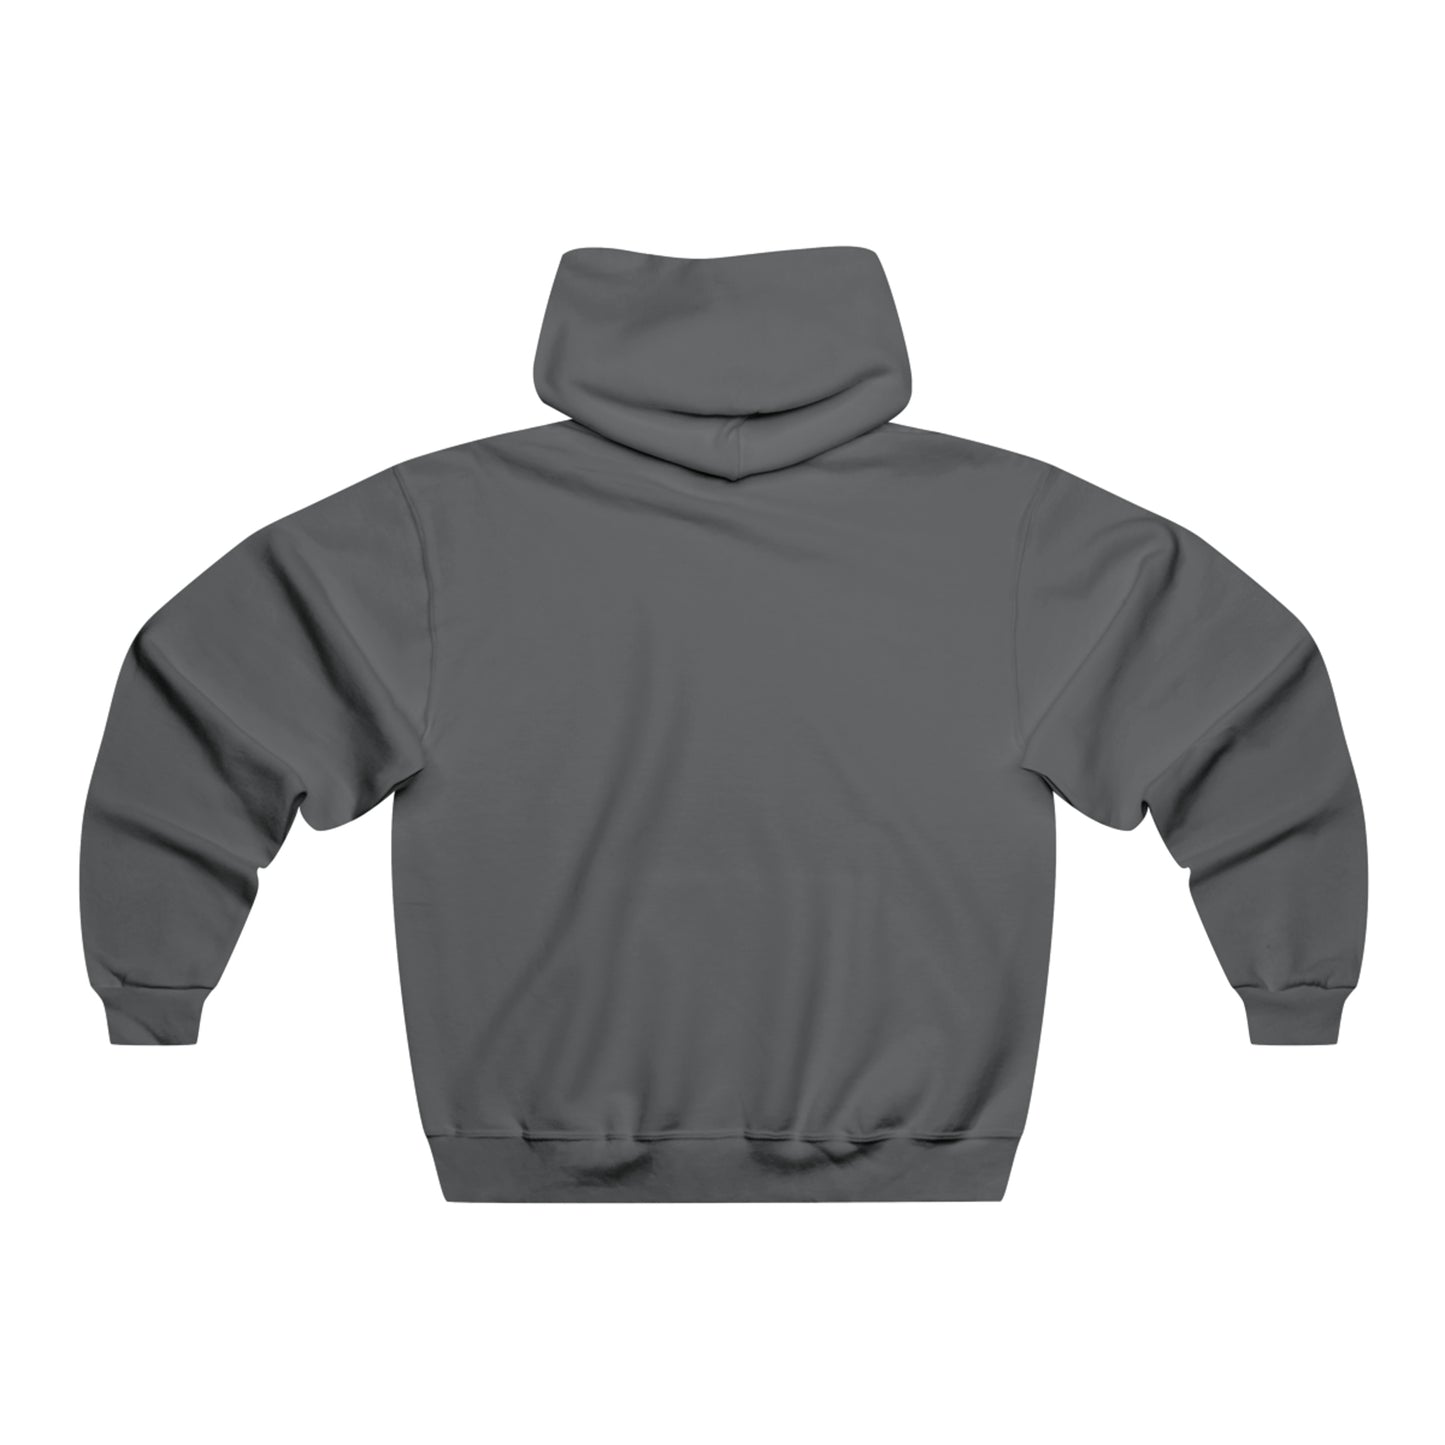 Vicious Wrestling NUBLEND® Hooded Sweatshirt